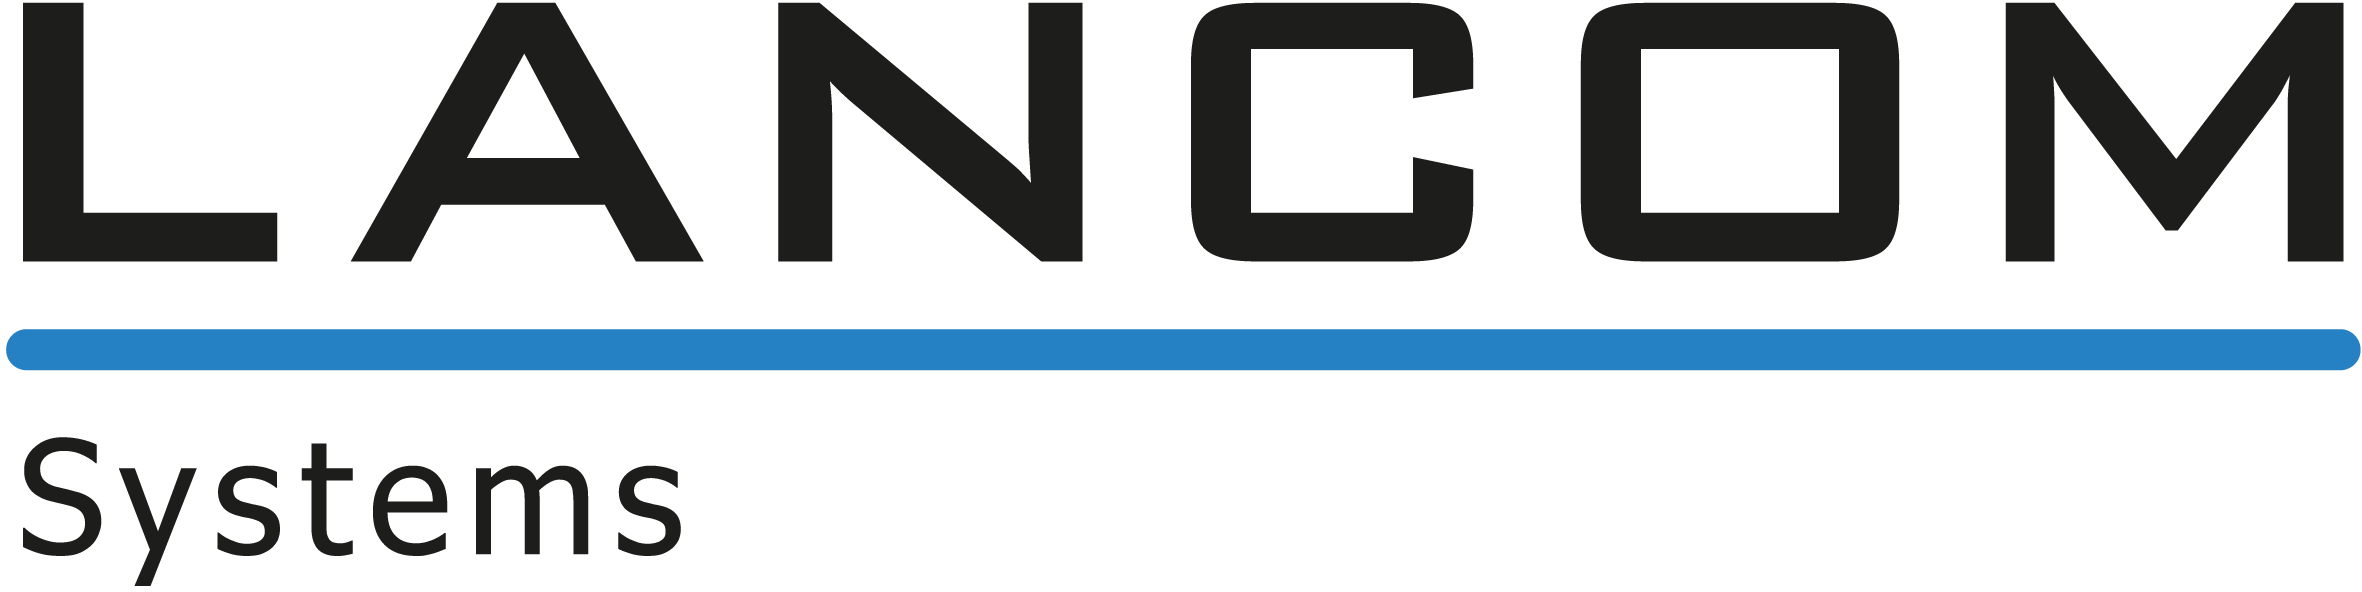 LANCOM Logo DV Kontor Koenigsfeld